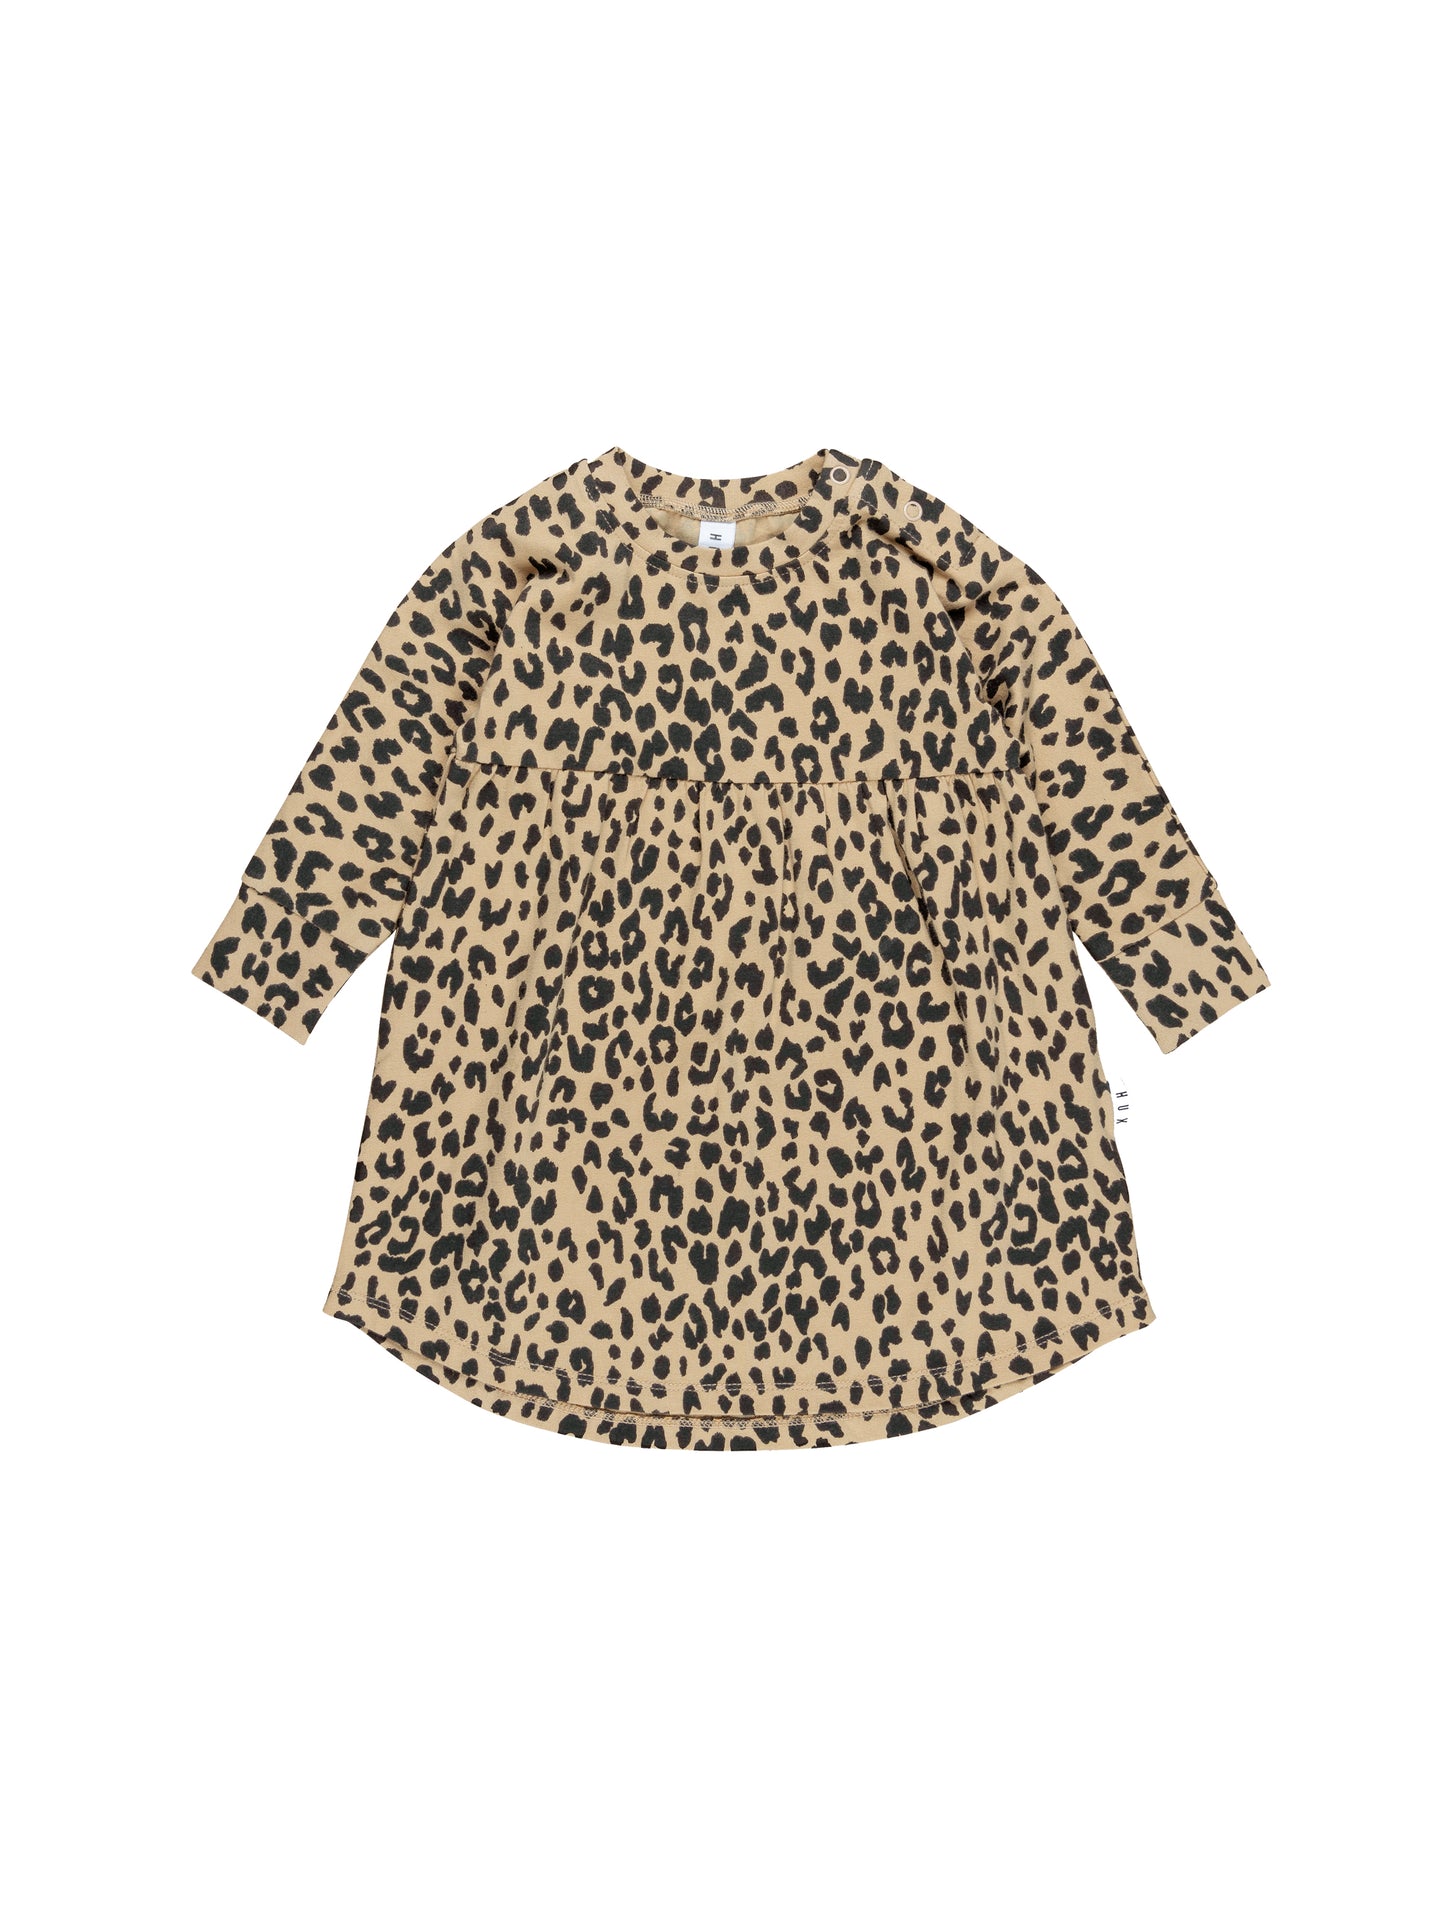 Huxbaby Leopard Swirl Dress